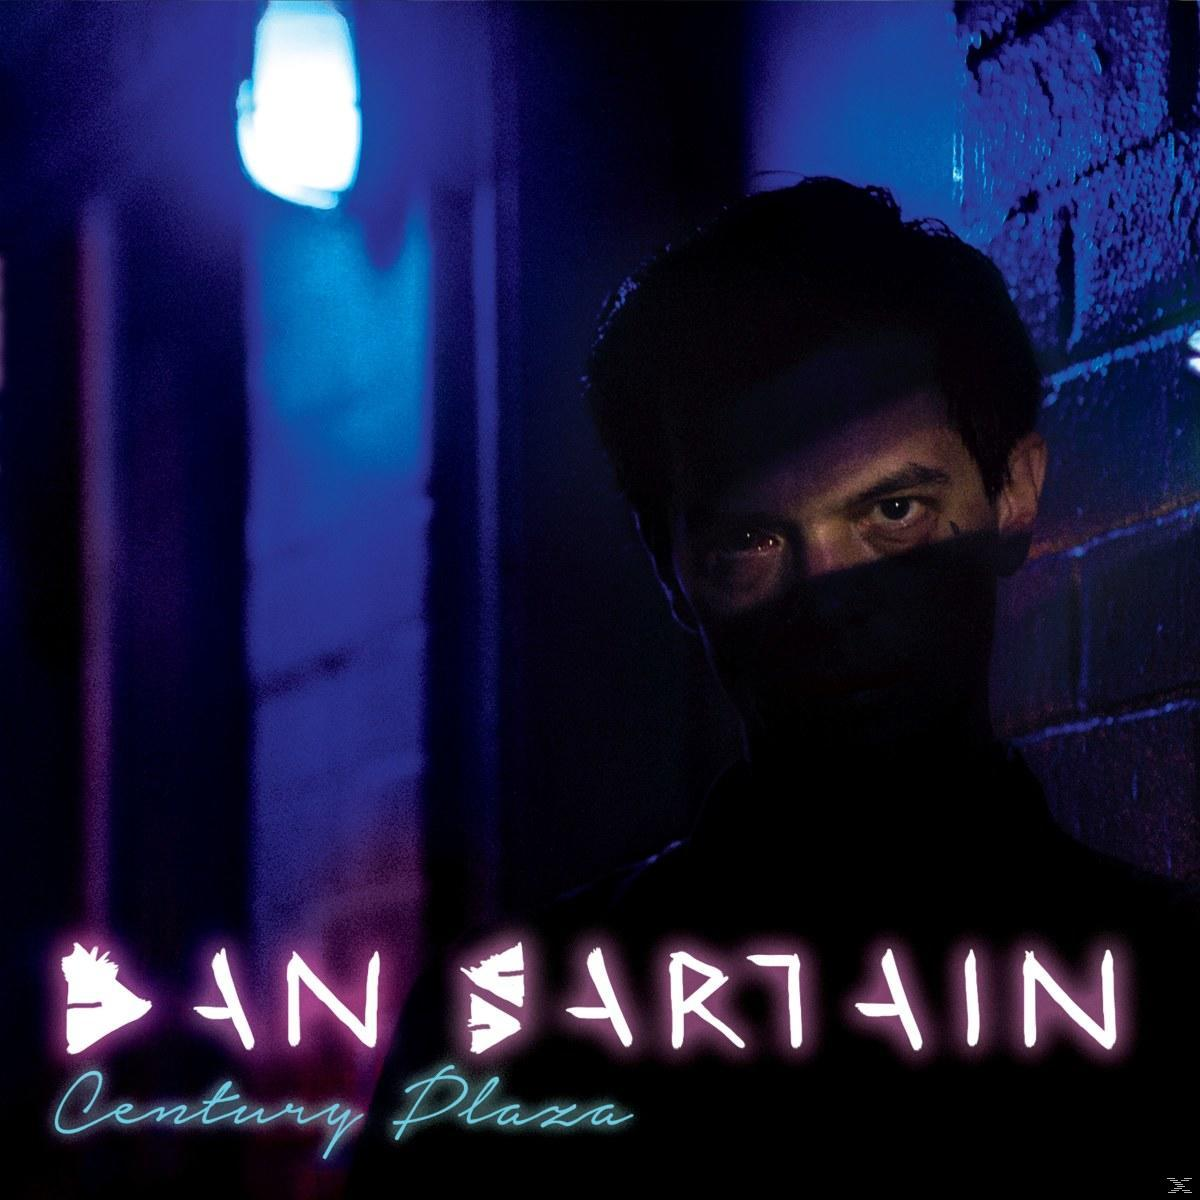 Dan Sartain - - Century Plaza (Vinyl)